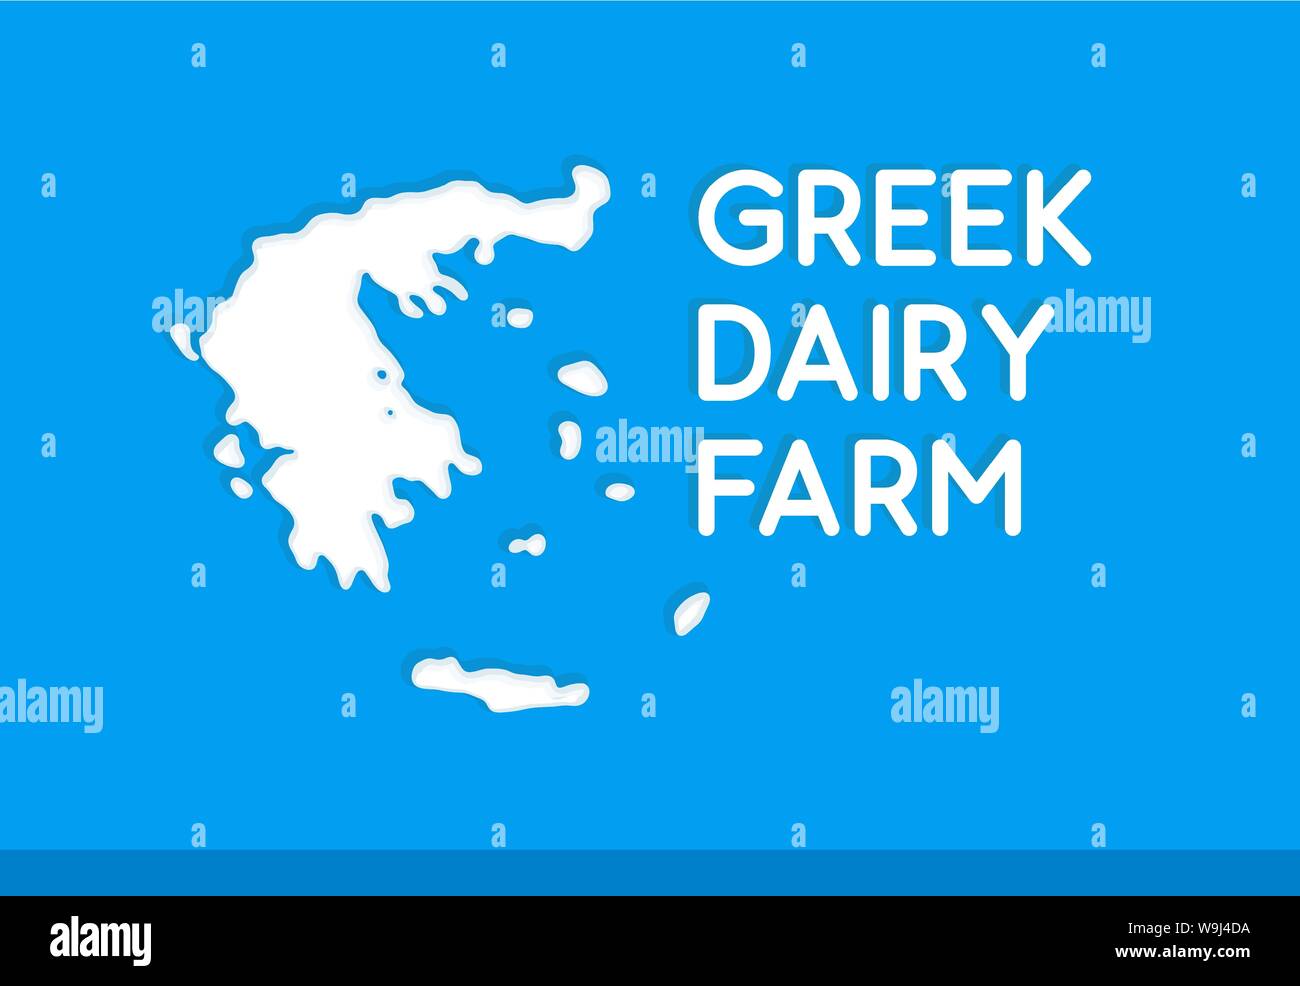 Il greco Dairy Farm, concetto vettoriale illustrazione con silhouette di Grecia mappa dipinta da latte sulla nazionale di colore blu. Illustrazione Vettoriale